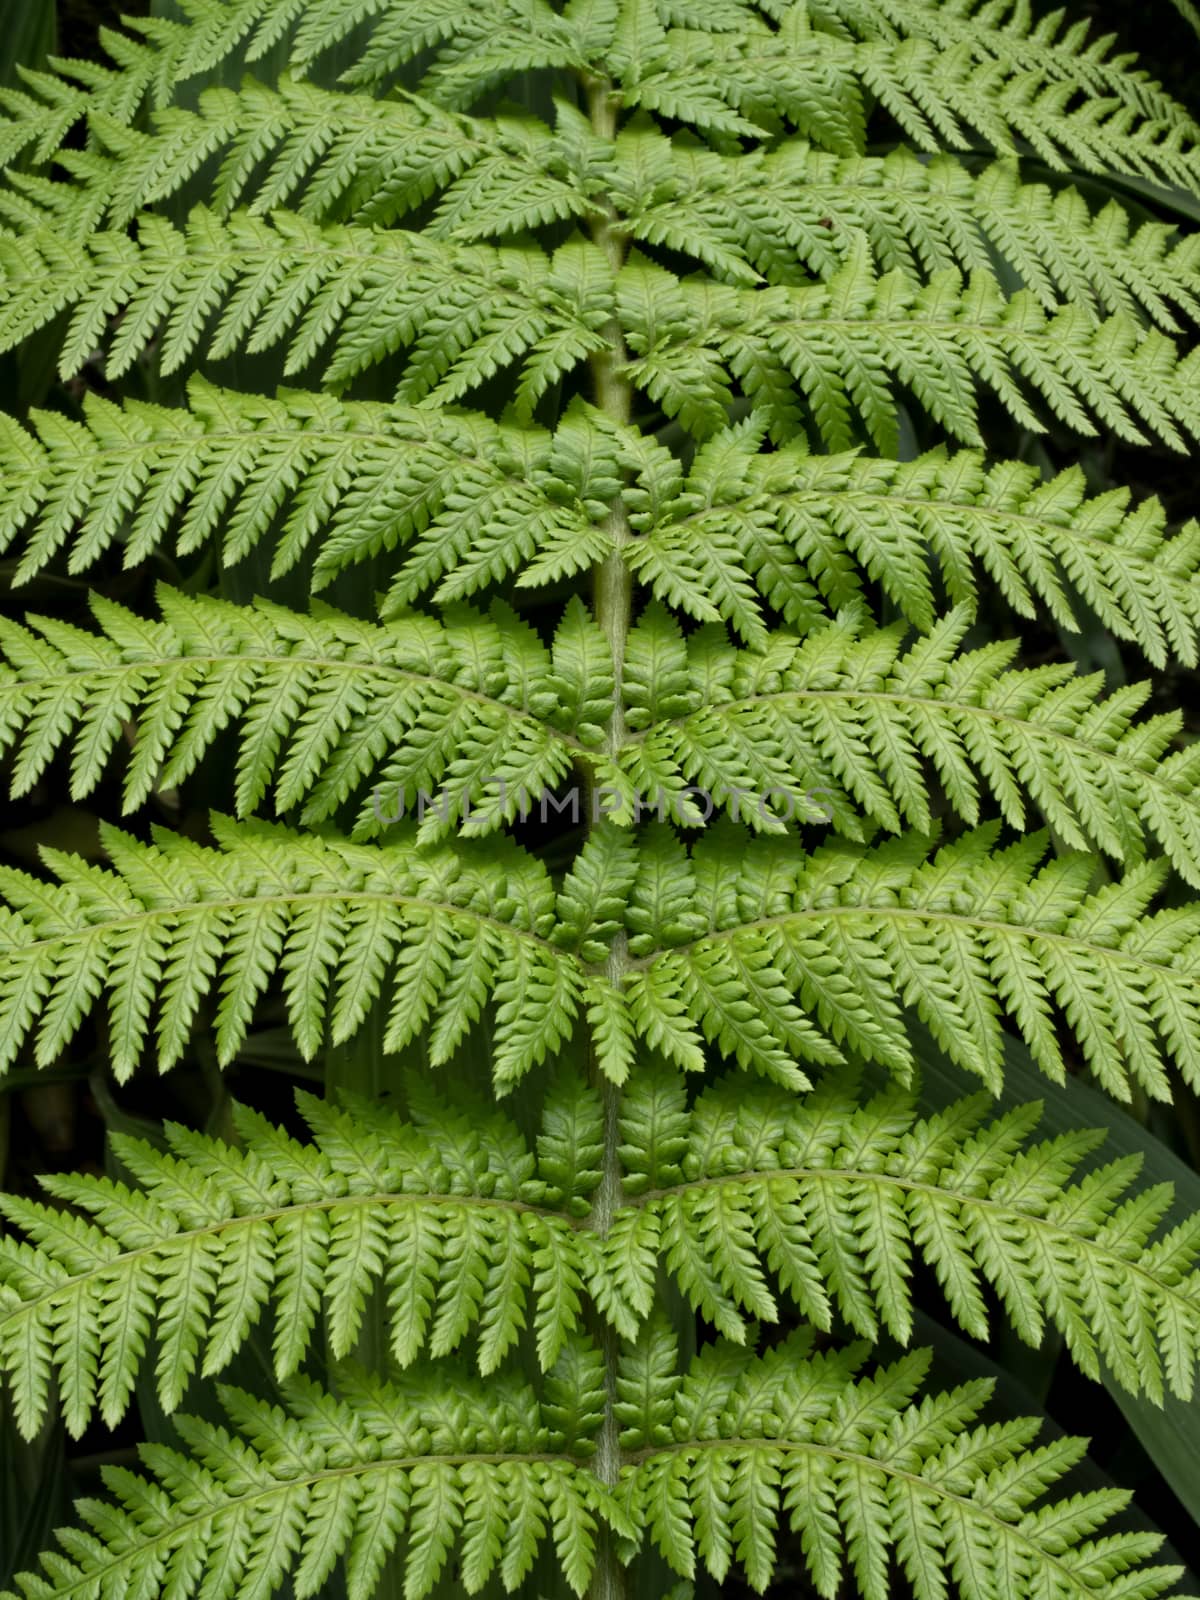 fern leaf texture background by zkruger